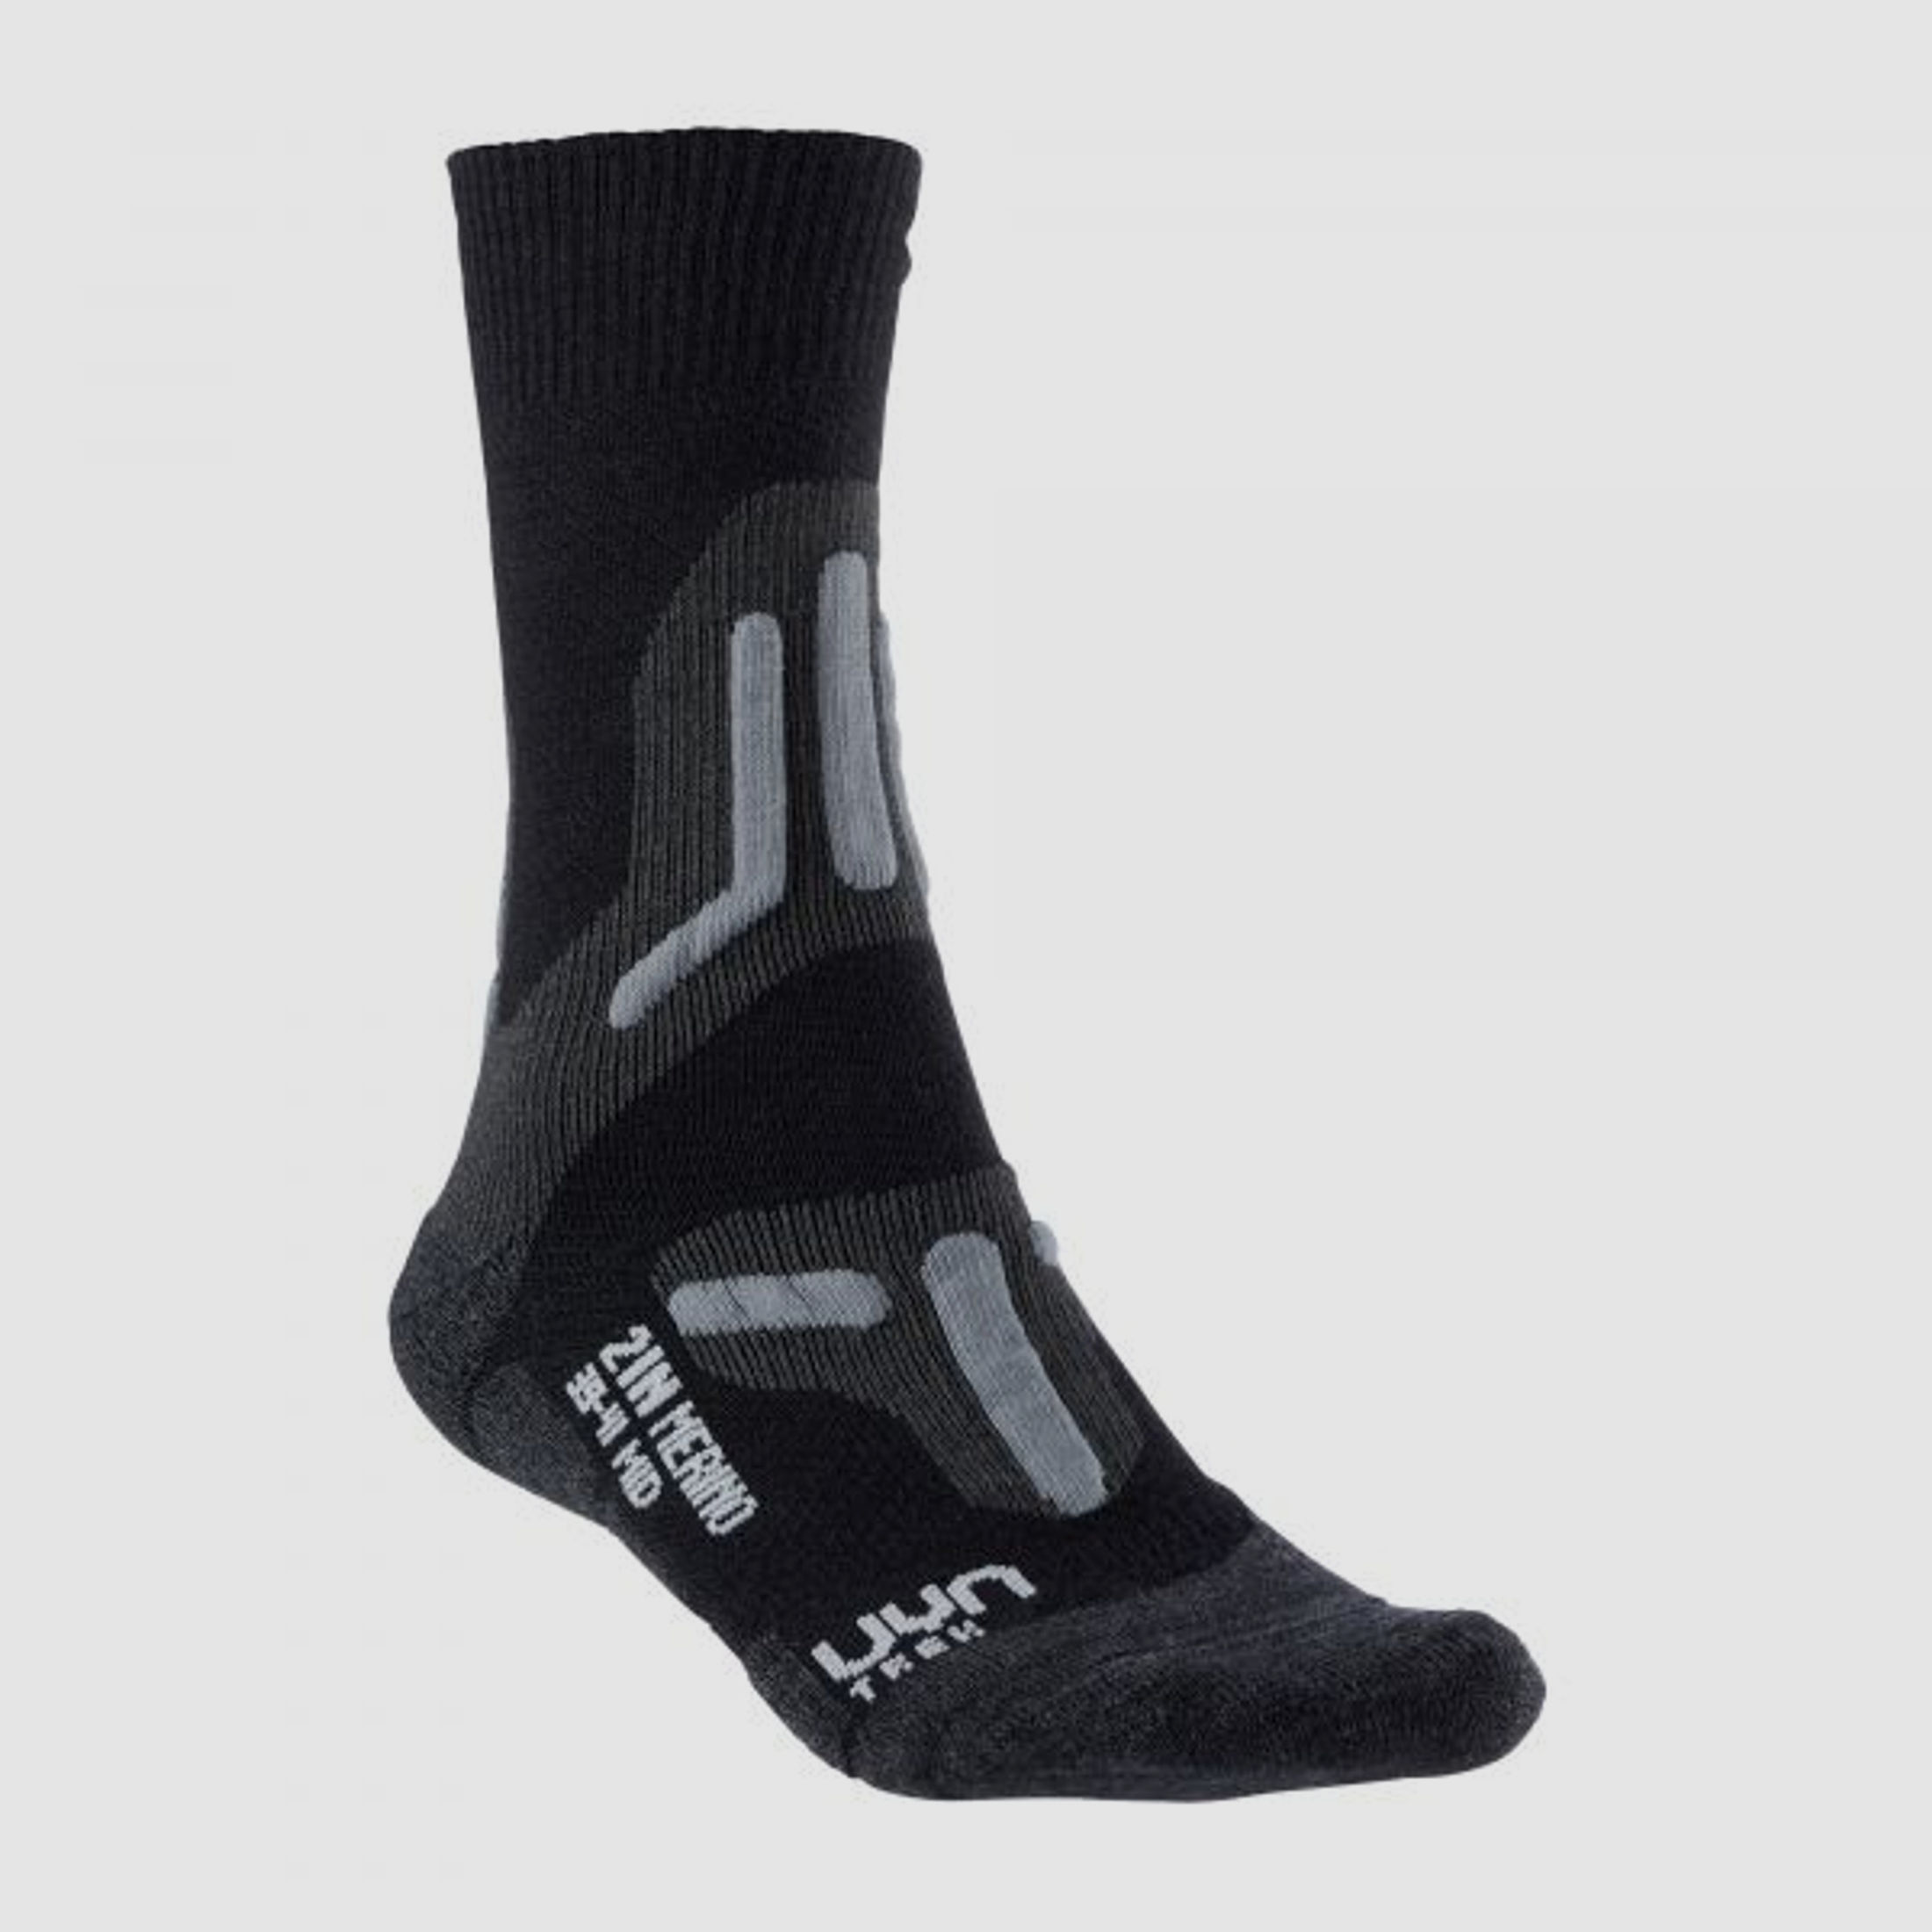 Uyn UYN Socken Trekking 2in Merino Mid Socks Männer schwarz grau